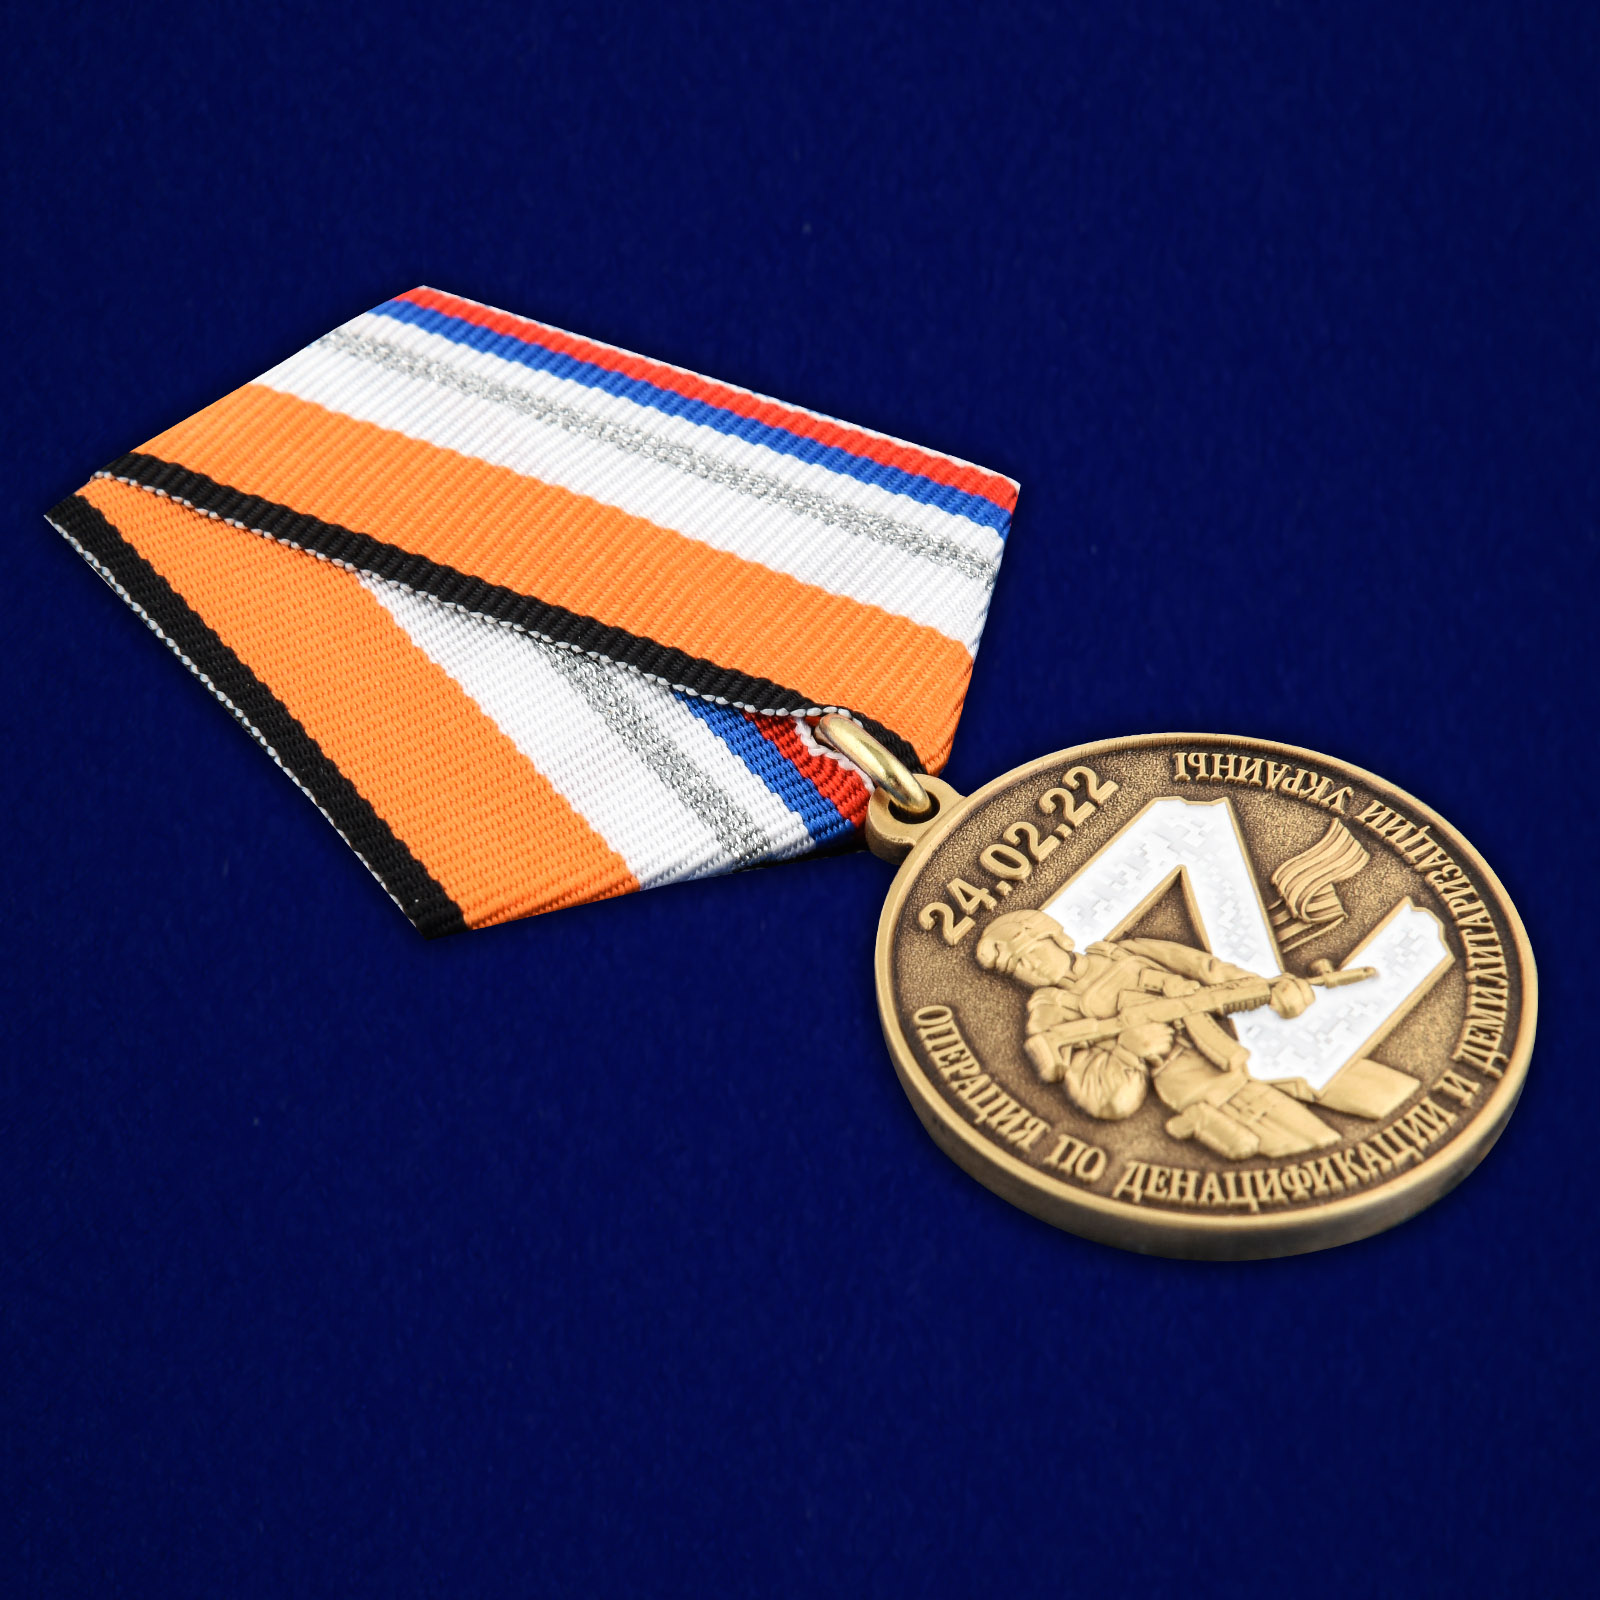 Купить медаль "За участие в операции по денацификации и демилитаризации Украины"